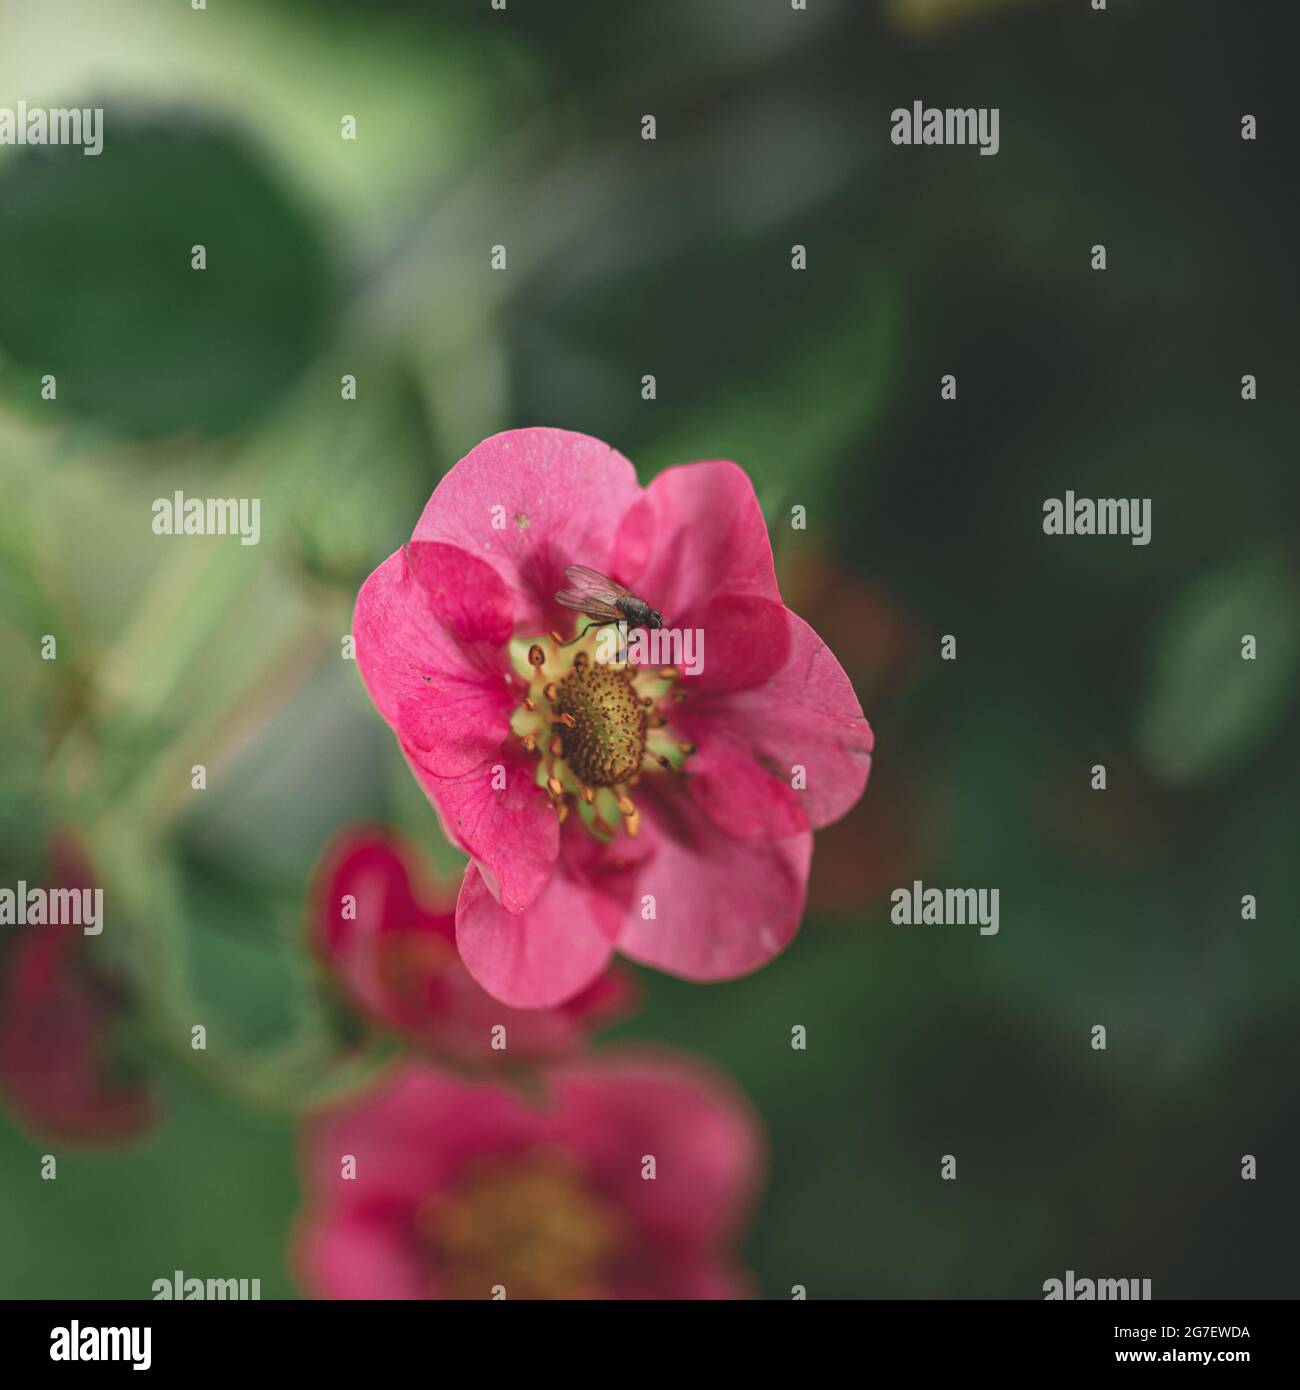 mosca pequeña en flor roja del jardín. Fondo verde natural difuminado Foto de stock